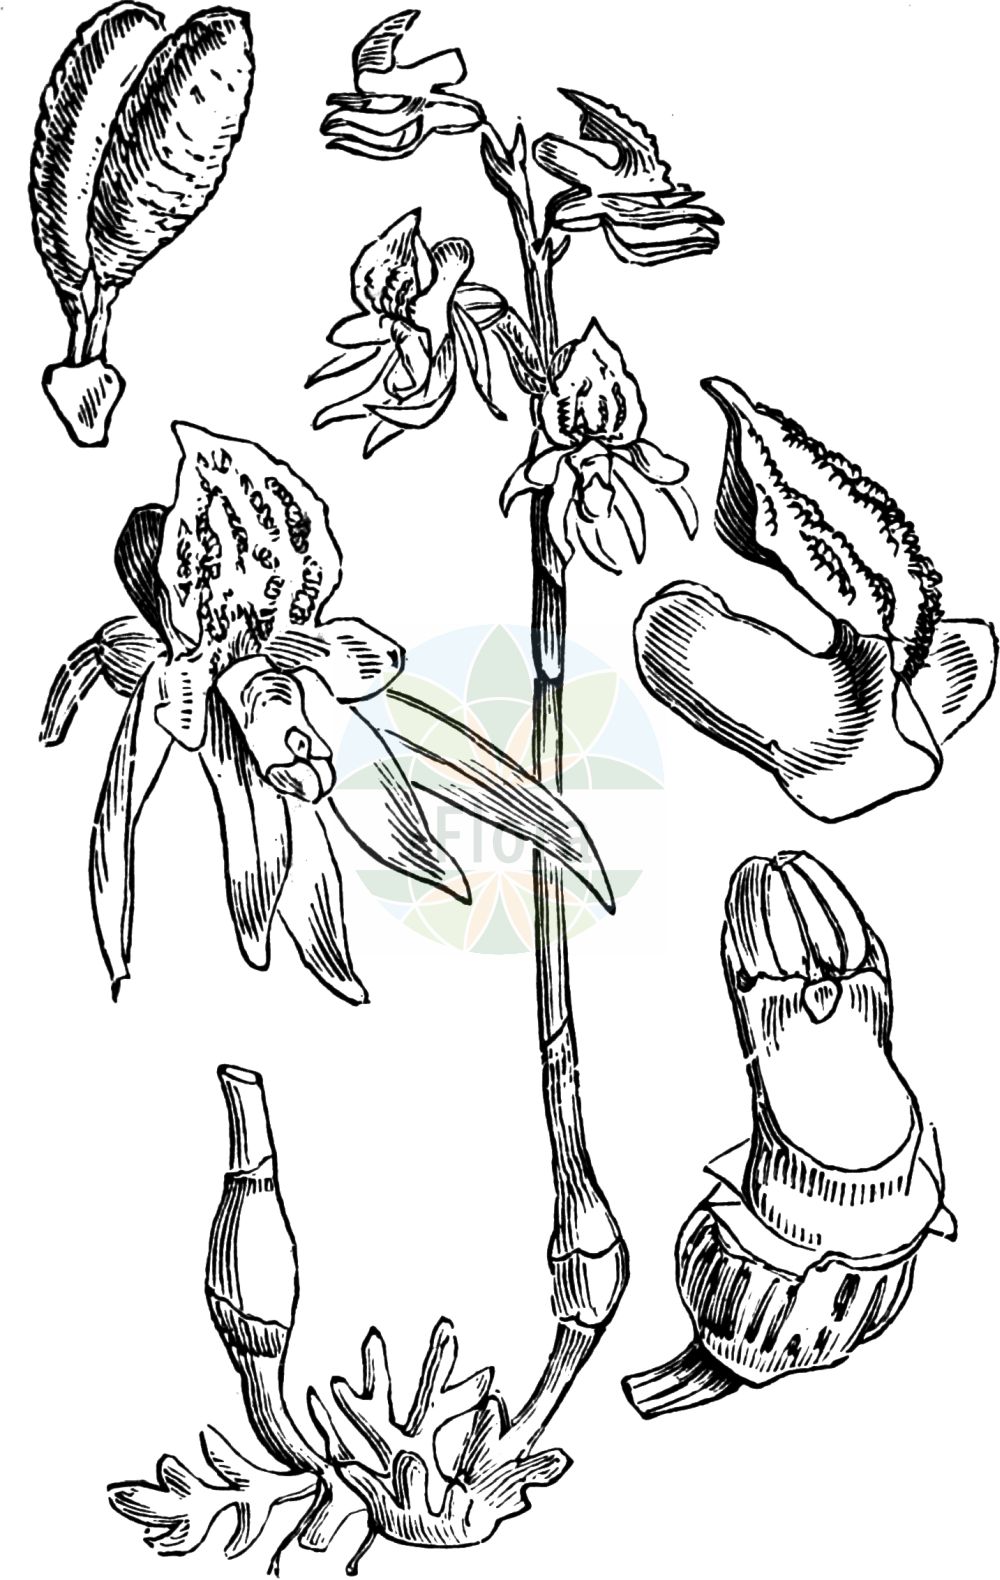 Historische Abbildung von Epipogium aphyllum (Blattloser Widerbart - Ghost Orchid). Das Bild zeigt Blatt, Bluete, Frucht und Same. ---- Historical Drawing of Epipogium aphyllum (Blattloser Widerbart - Ghost Orchid). The image is showing leaf, flower, fruit and seed.(Epipogium aphyllum,Blattloser Widerbart,Ghost Orchid,Epipactis epipogium,Epipogium aphyllum,Epipogium epipogium,Epipogium generalis,Epipogium gmelinii,Limodorum epipogium,Orchis aphylla,Satyrium epipogium,Serapias epigogium,Blattloser Widerbart,Ghost Orchid,Leafless Epipogium,Spurred Coral-root,Epipogium,Widerbart,Ghost Orchid,Orchidaceae,Knabenkrautgewächse,Orchid family,Blatt,Bluete,Frucht,Same,leaf,flower,fruit,seed,Fitch et al. (1880))